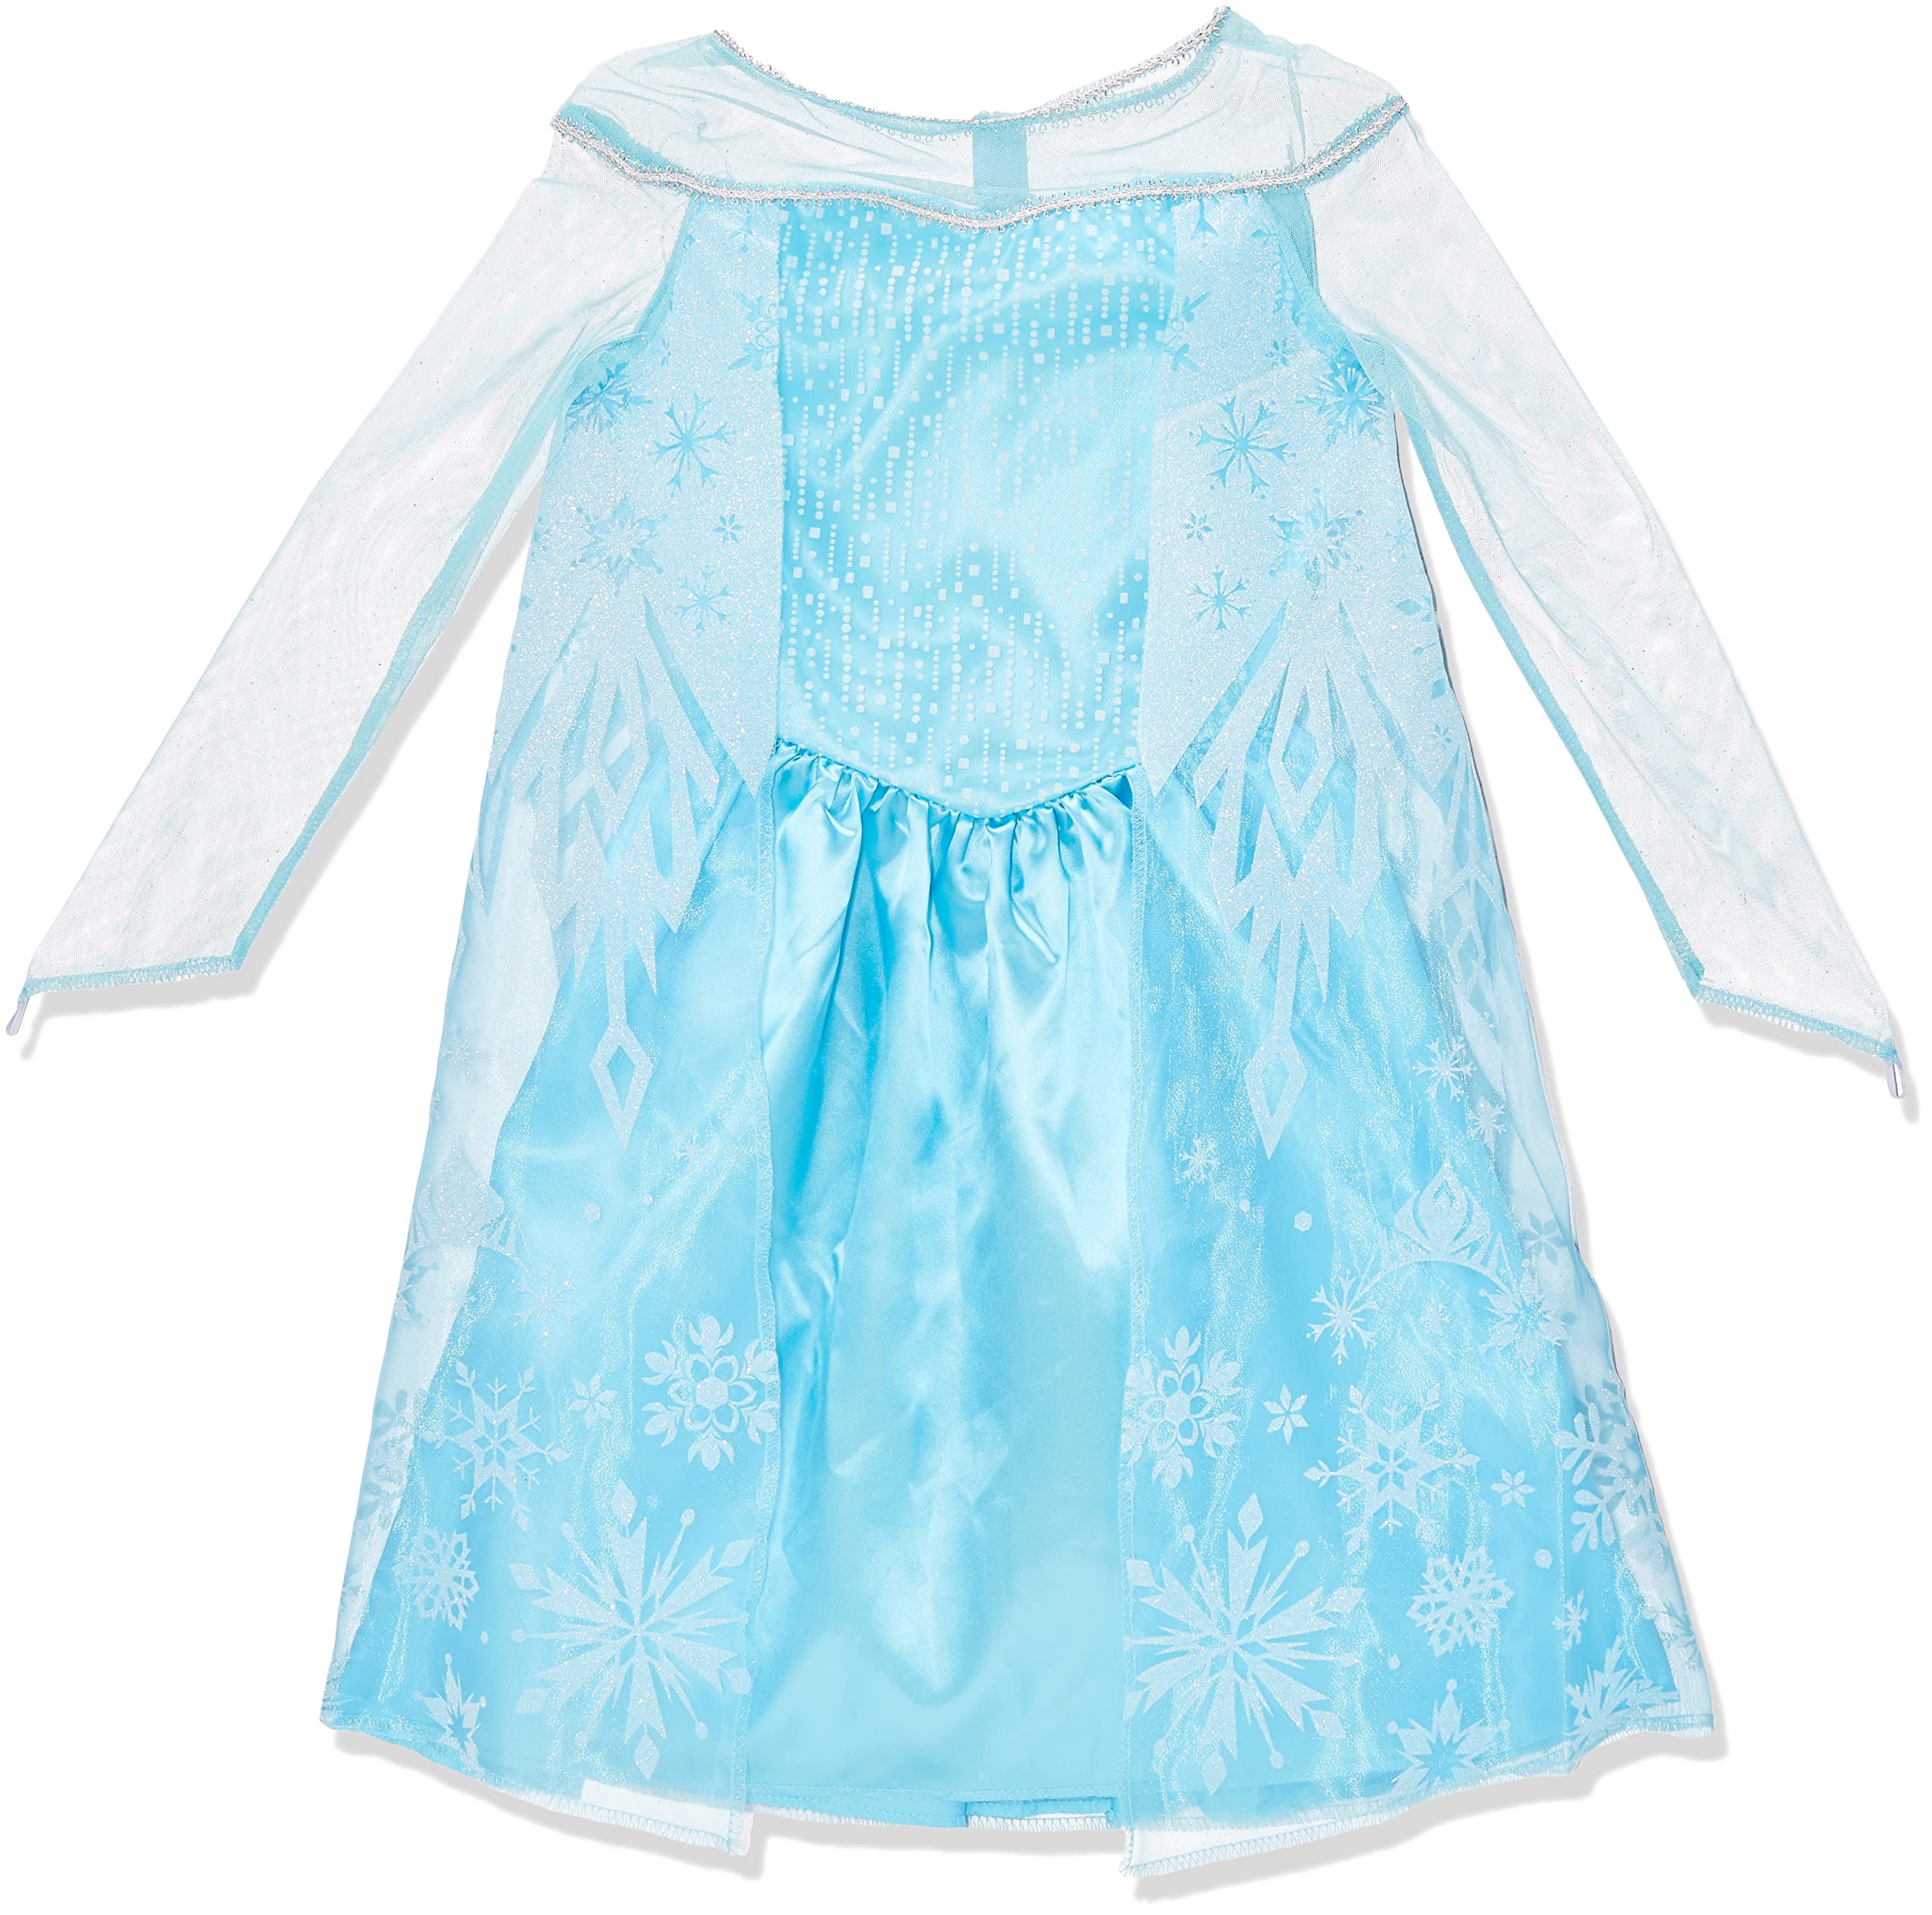 Elsa Toddler Classic Costume, Large (4-6x)